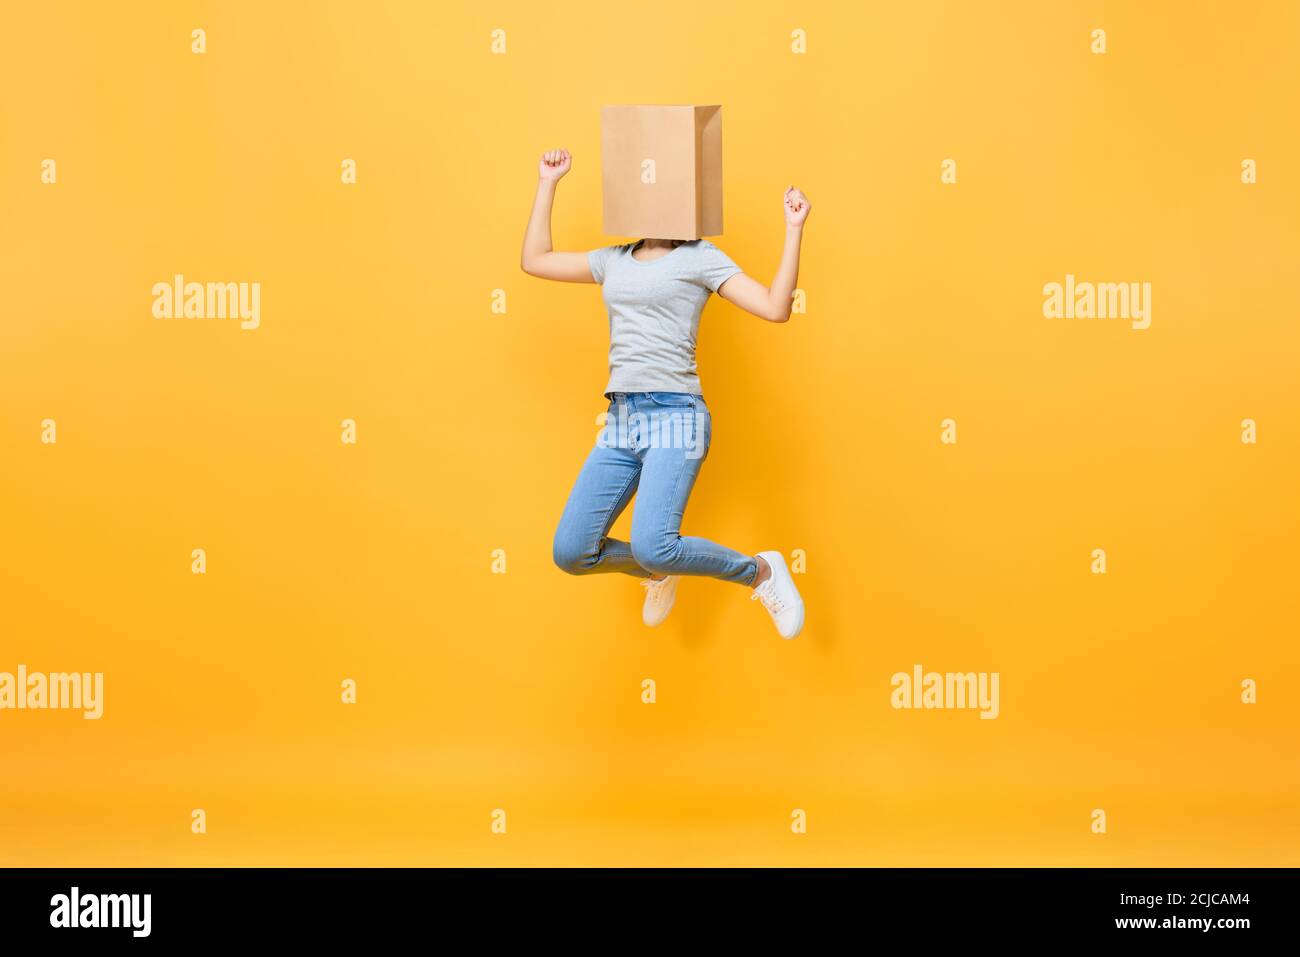 Divertente ritratto di donna anonima senza volto coprendo la testa con carta salto in borsa a mezz'aria isolato su sfondo giallo studio Foto Stock